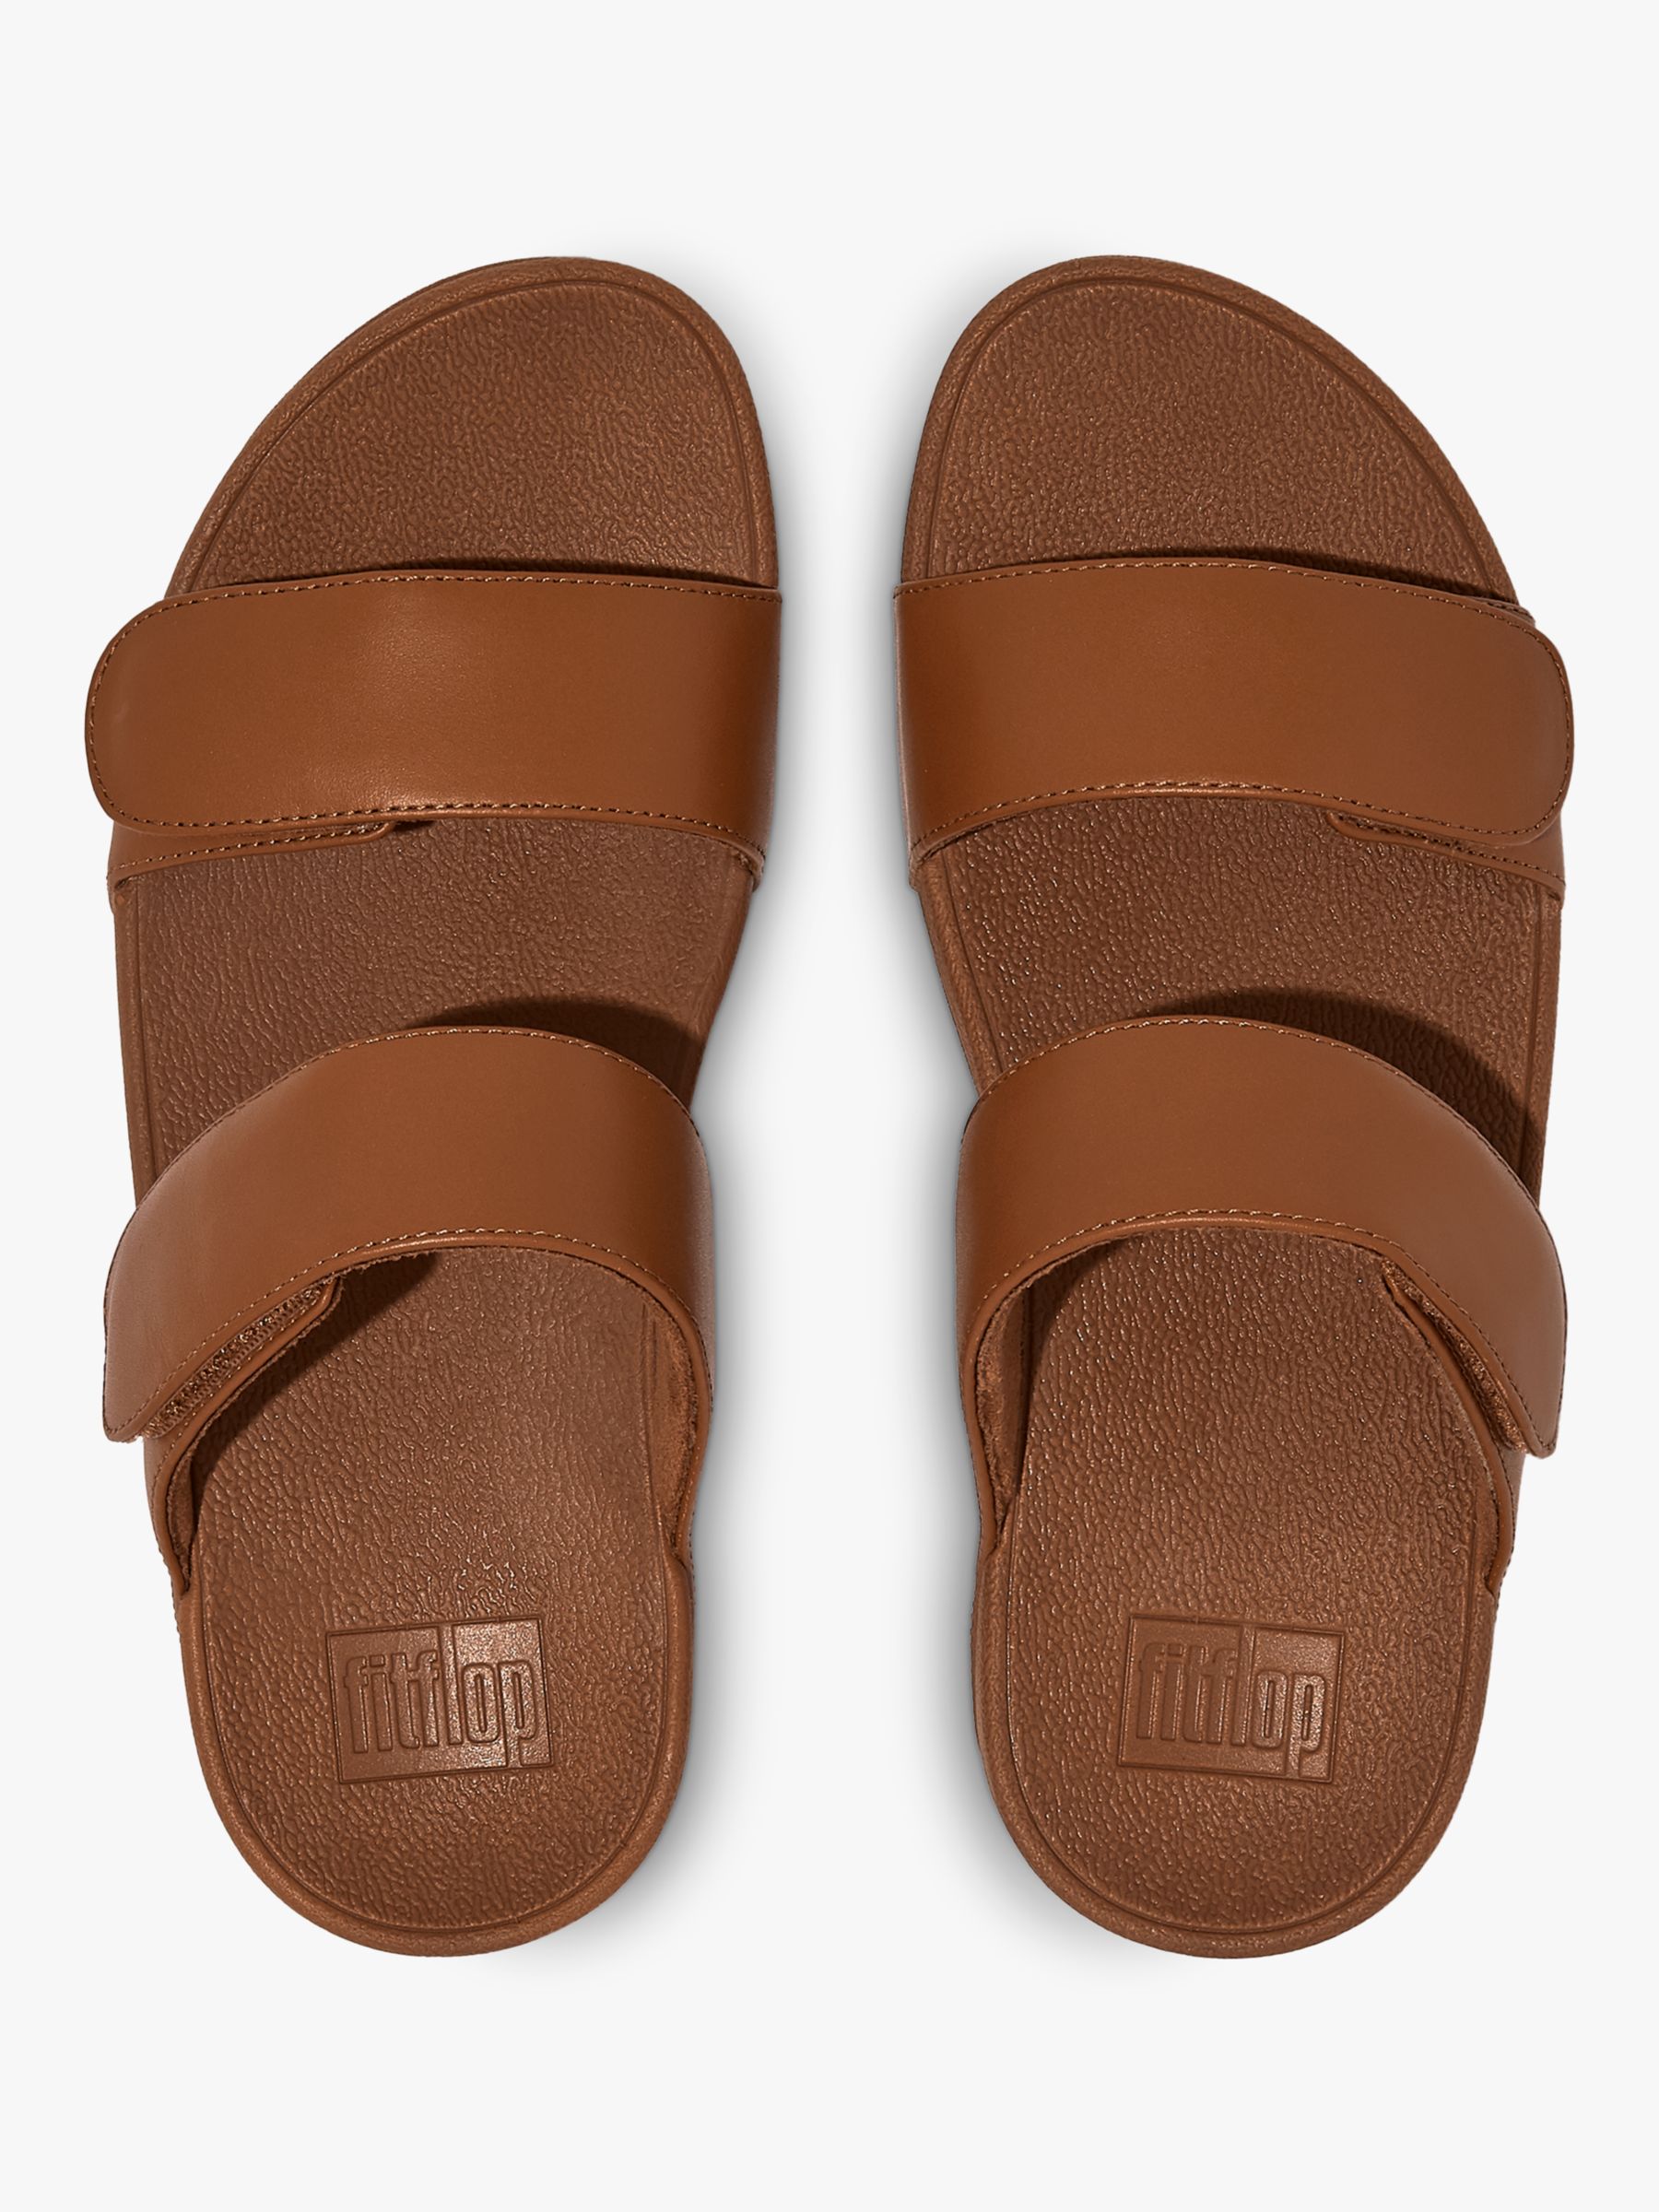 Buy FitFlop Lulu Adjustable Strap Leather Slider Sandals Online at johnlewis.com